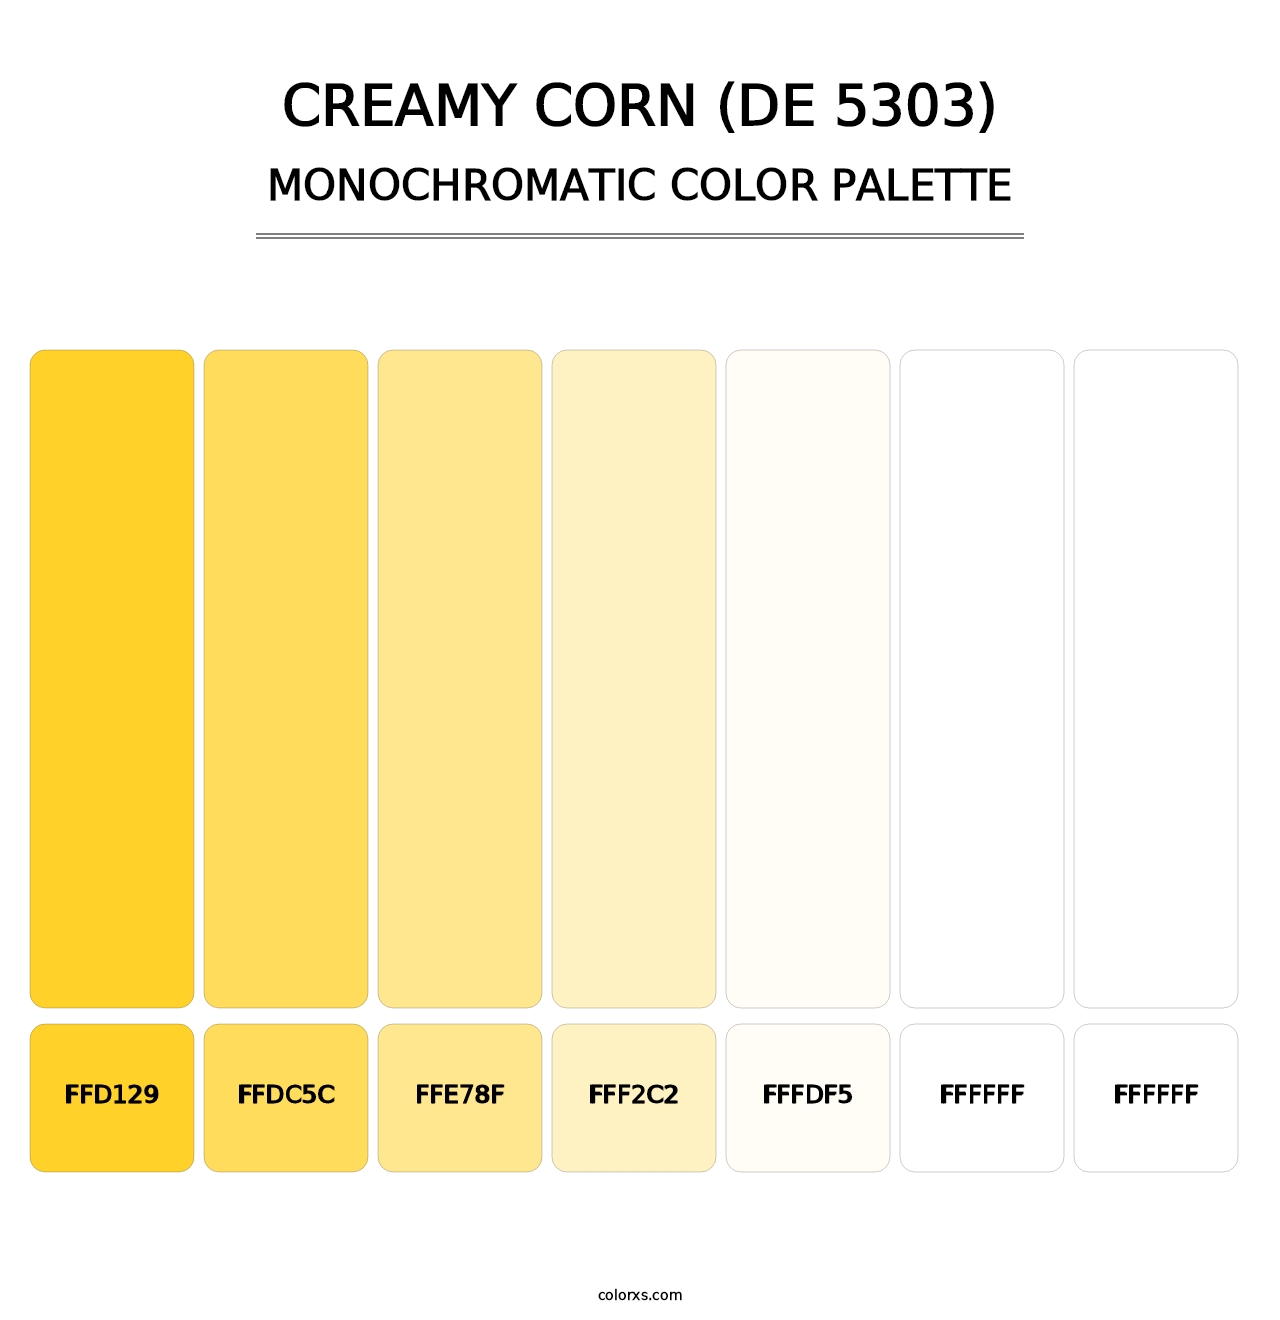 Creamy Corn (DE 5303) - Monochromatic Color Palette